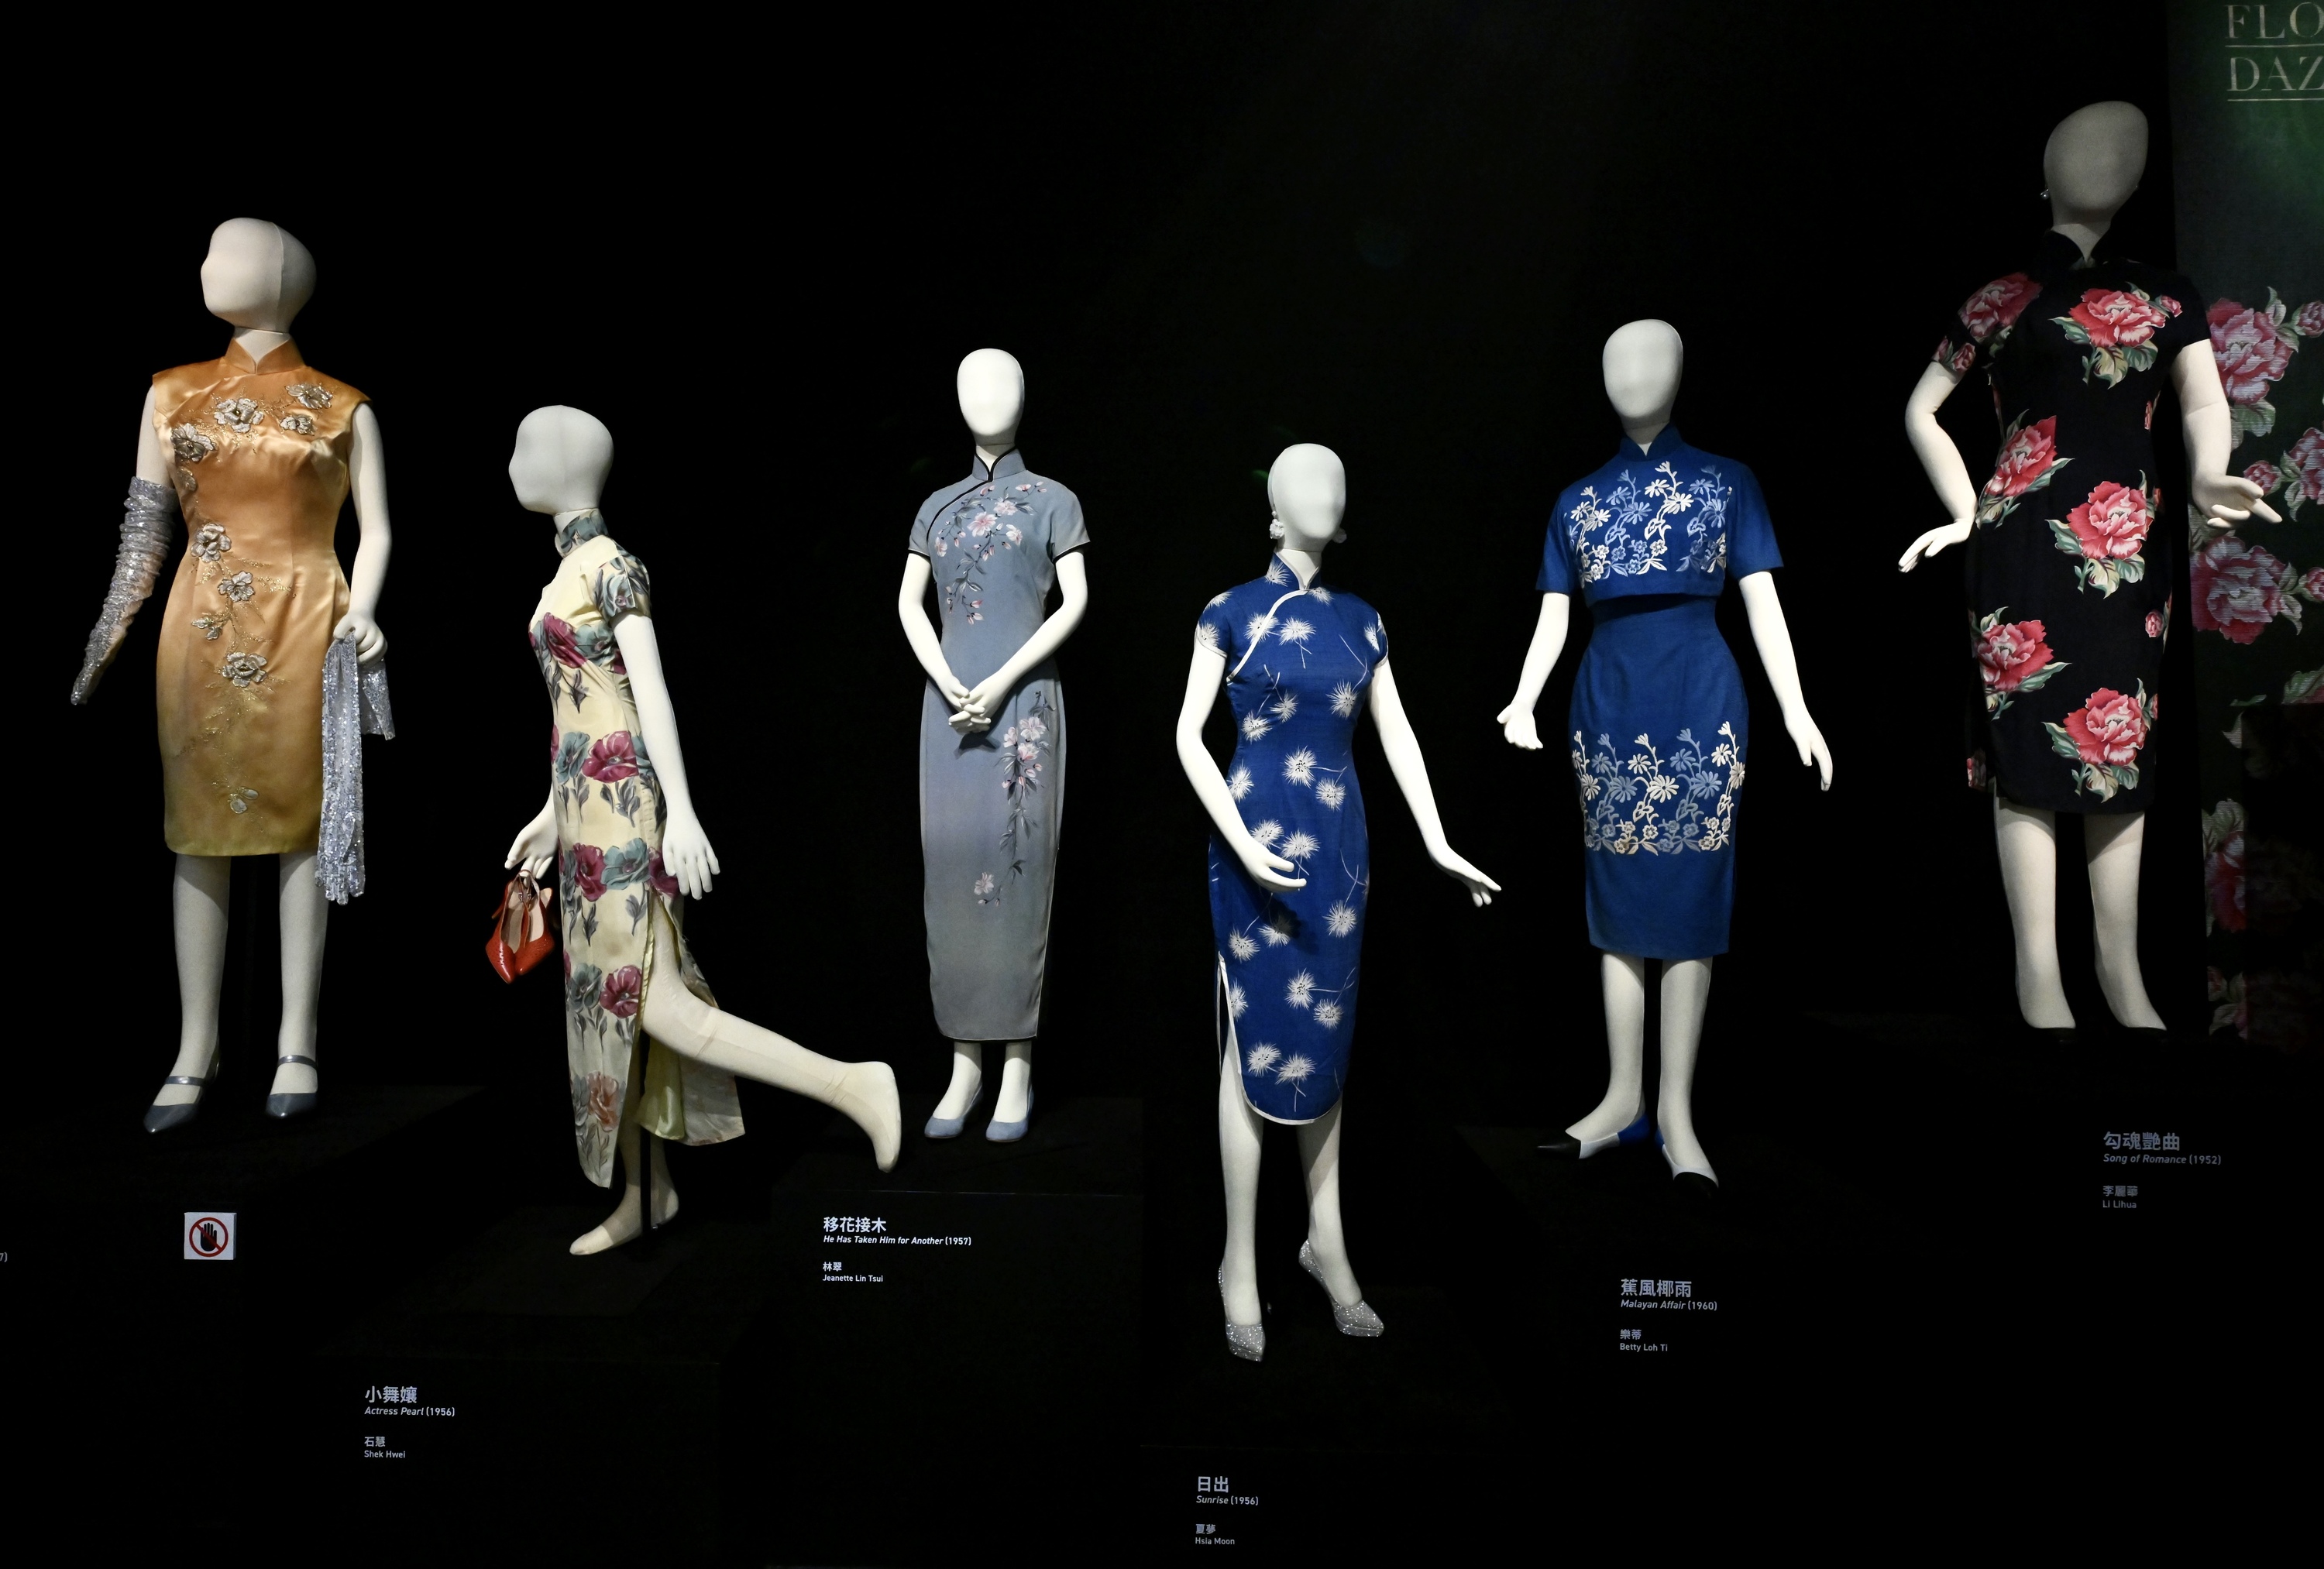 在“灰姑娘和她的旗袍”展览中通过电影探索中国时尚。